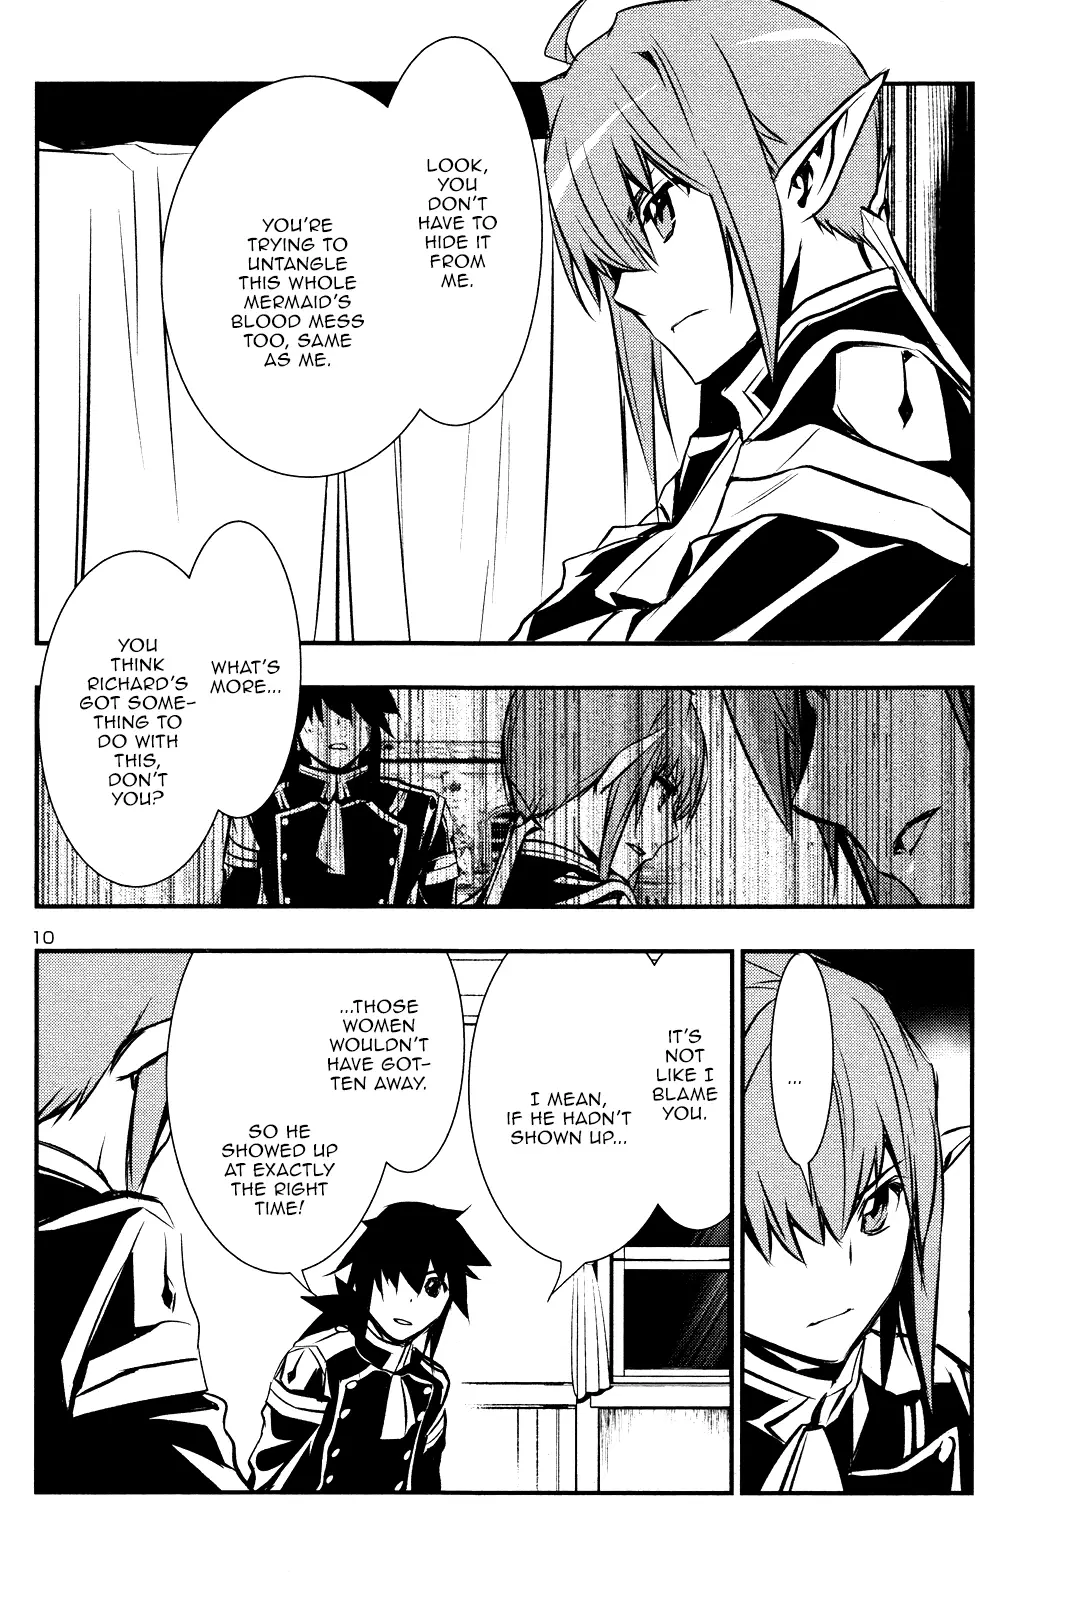 Shinju no Nectar - 32 page 10